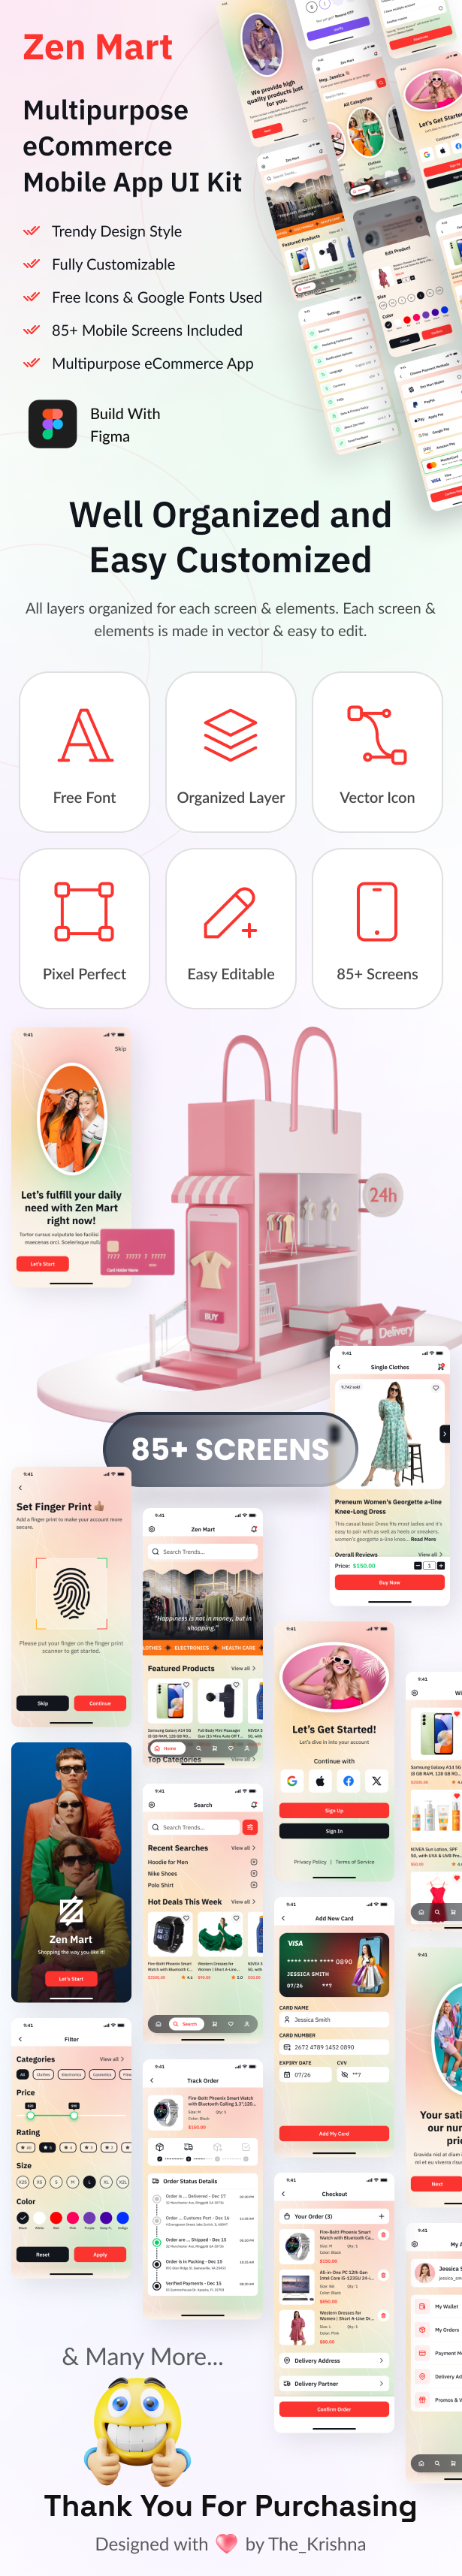 Multipurpose eCommerce Store Mobile App UI Kit Figma Template - Zen Mart - 2